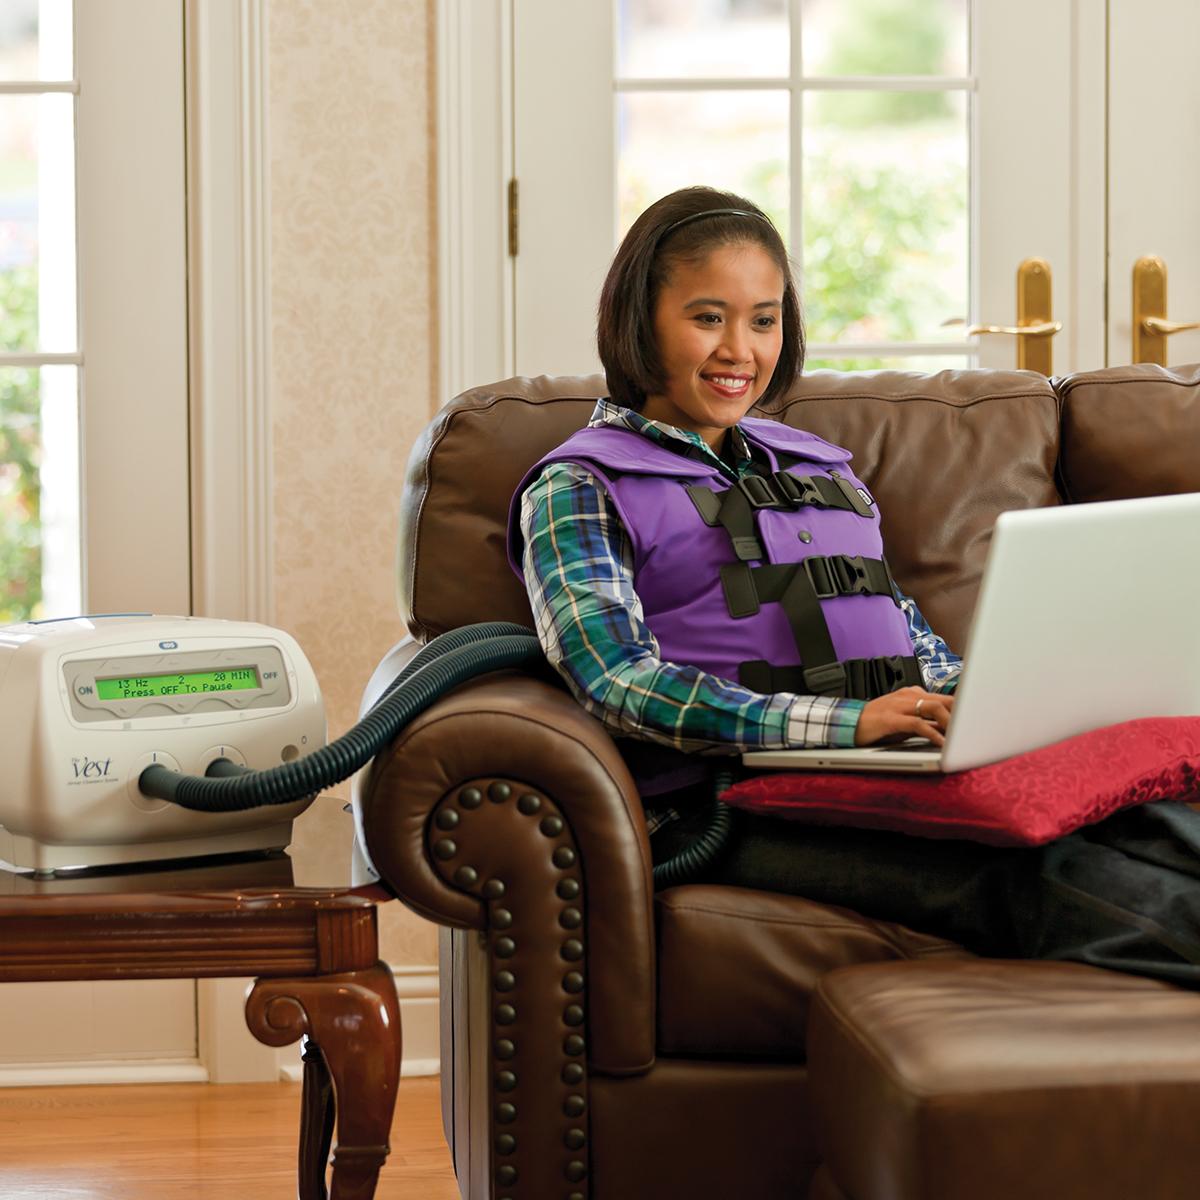 หญิงสาวทำงานกับคอมพิวเตอร์ขณะกำลังใช้ระบบ Vest พร้อมด้วยเสื้อกั๊ก Color Me สีม่วง